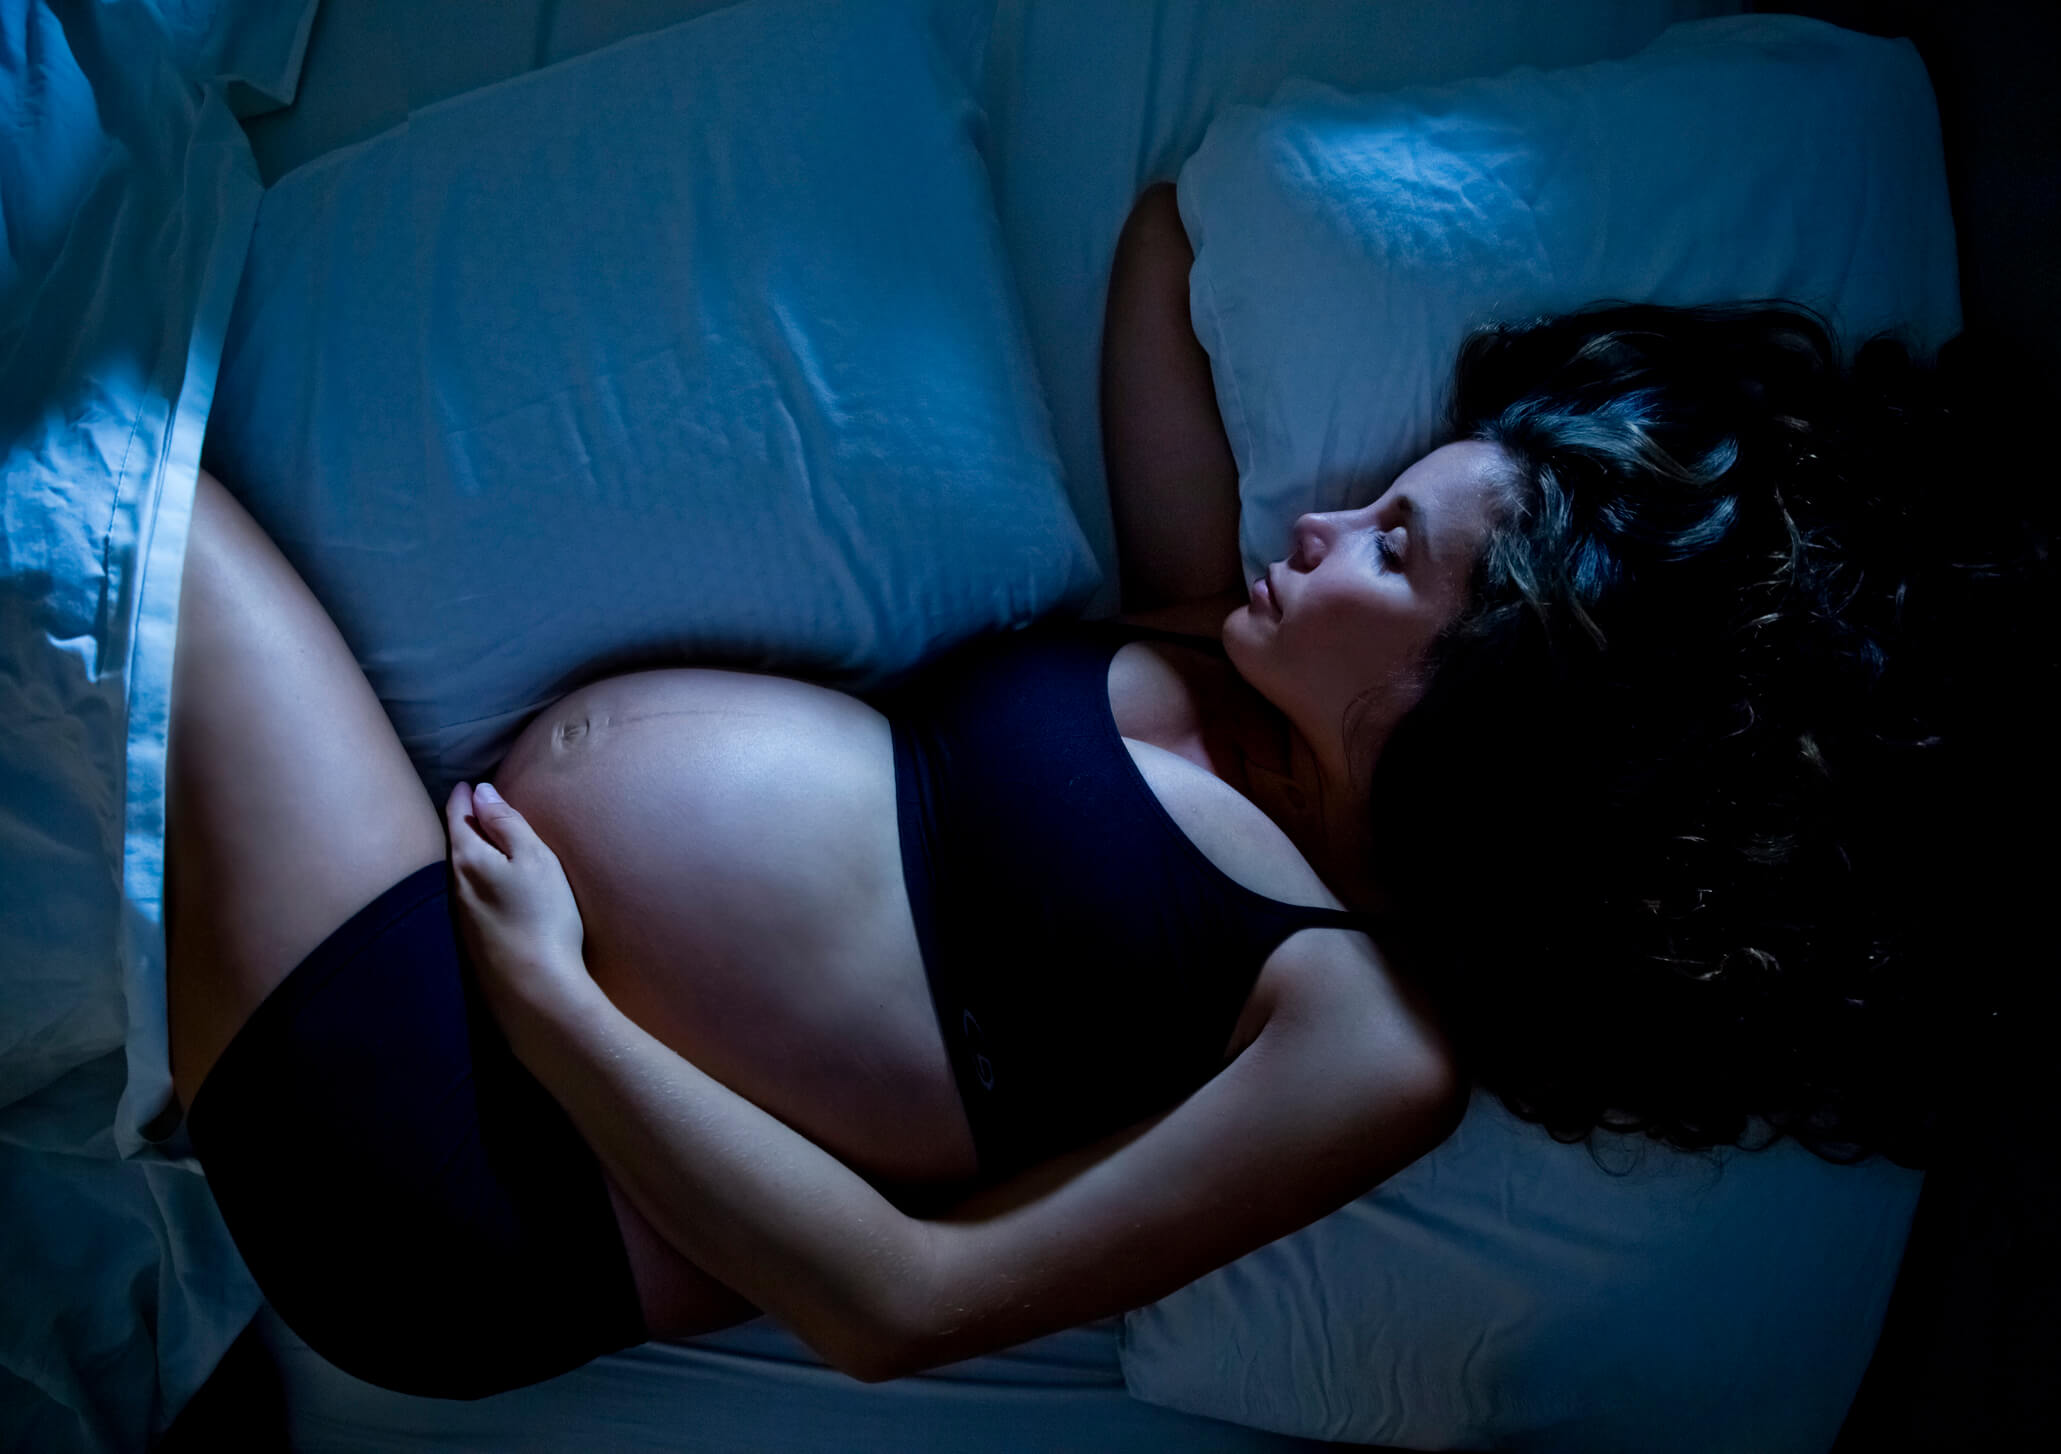 Mulher grávida dormindo na cama no escuro. Ela está deitada com um braço embaixo do travesseiro e outra na barriga. Está de top e shorts pretos.